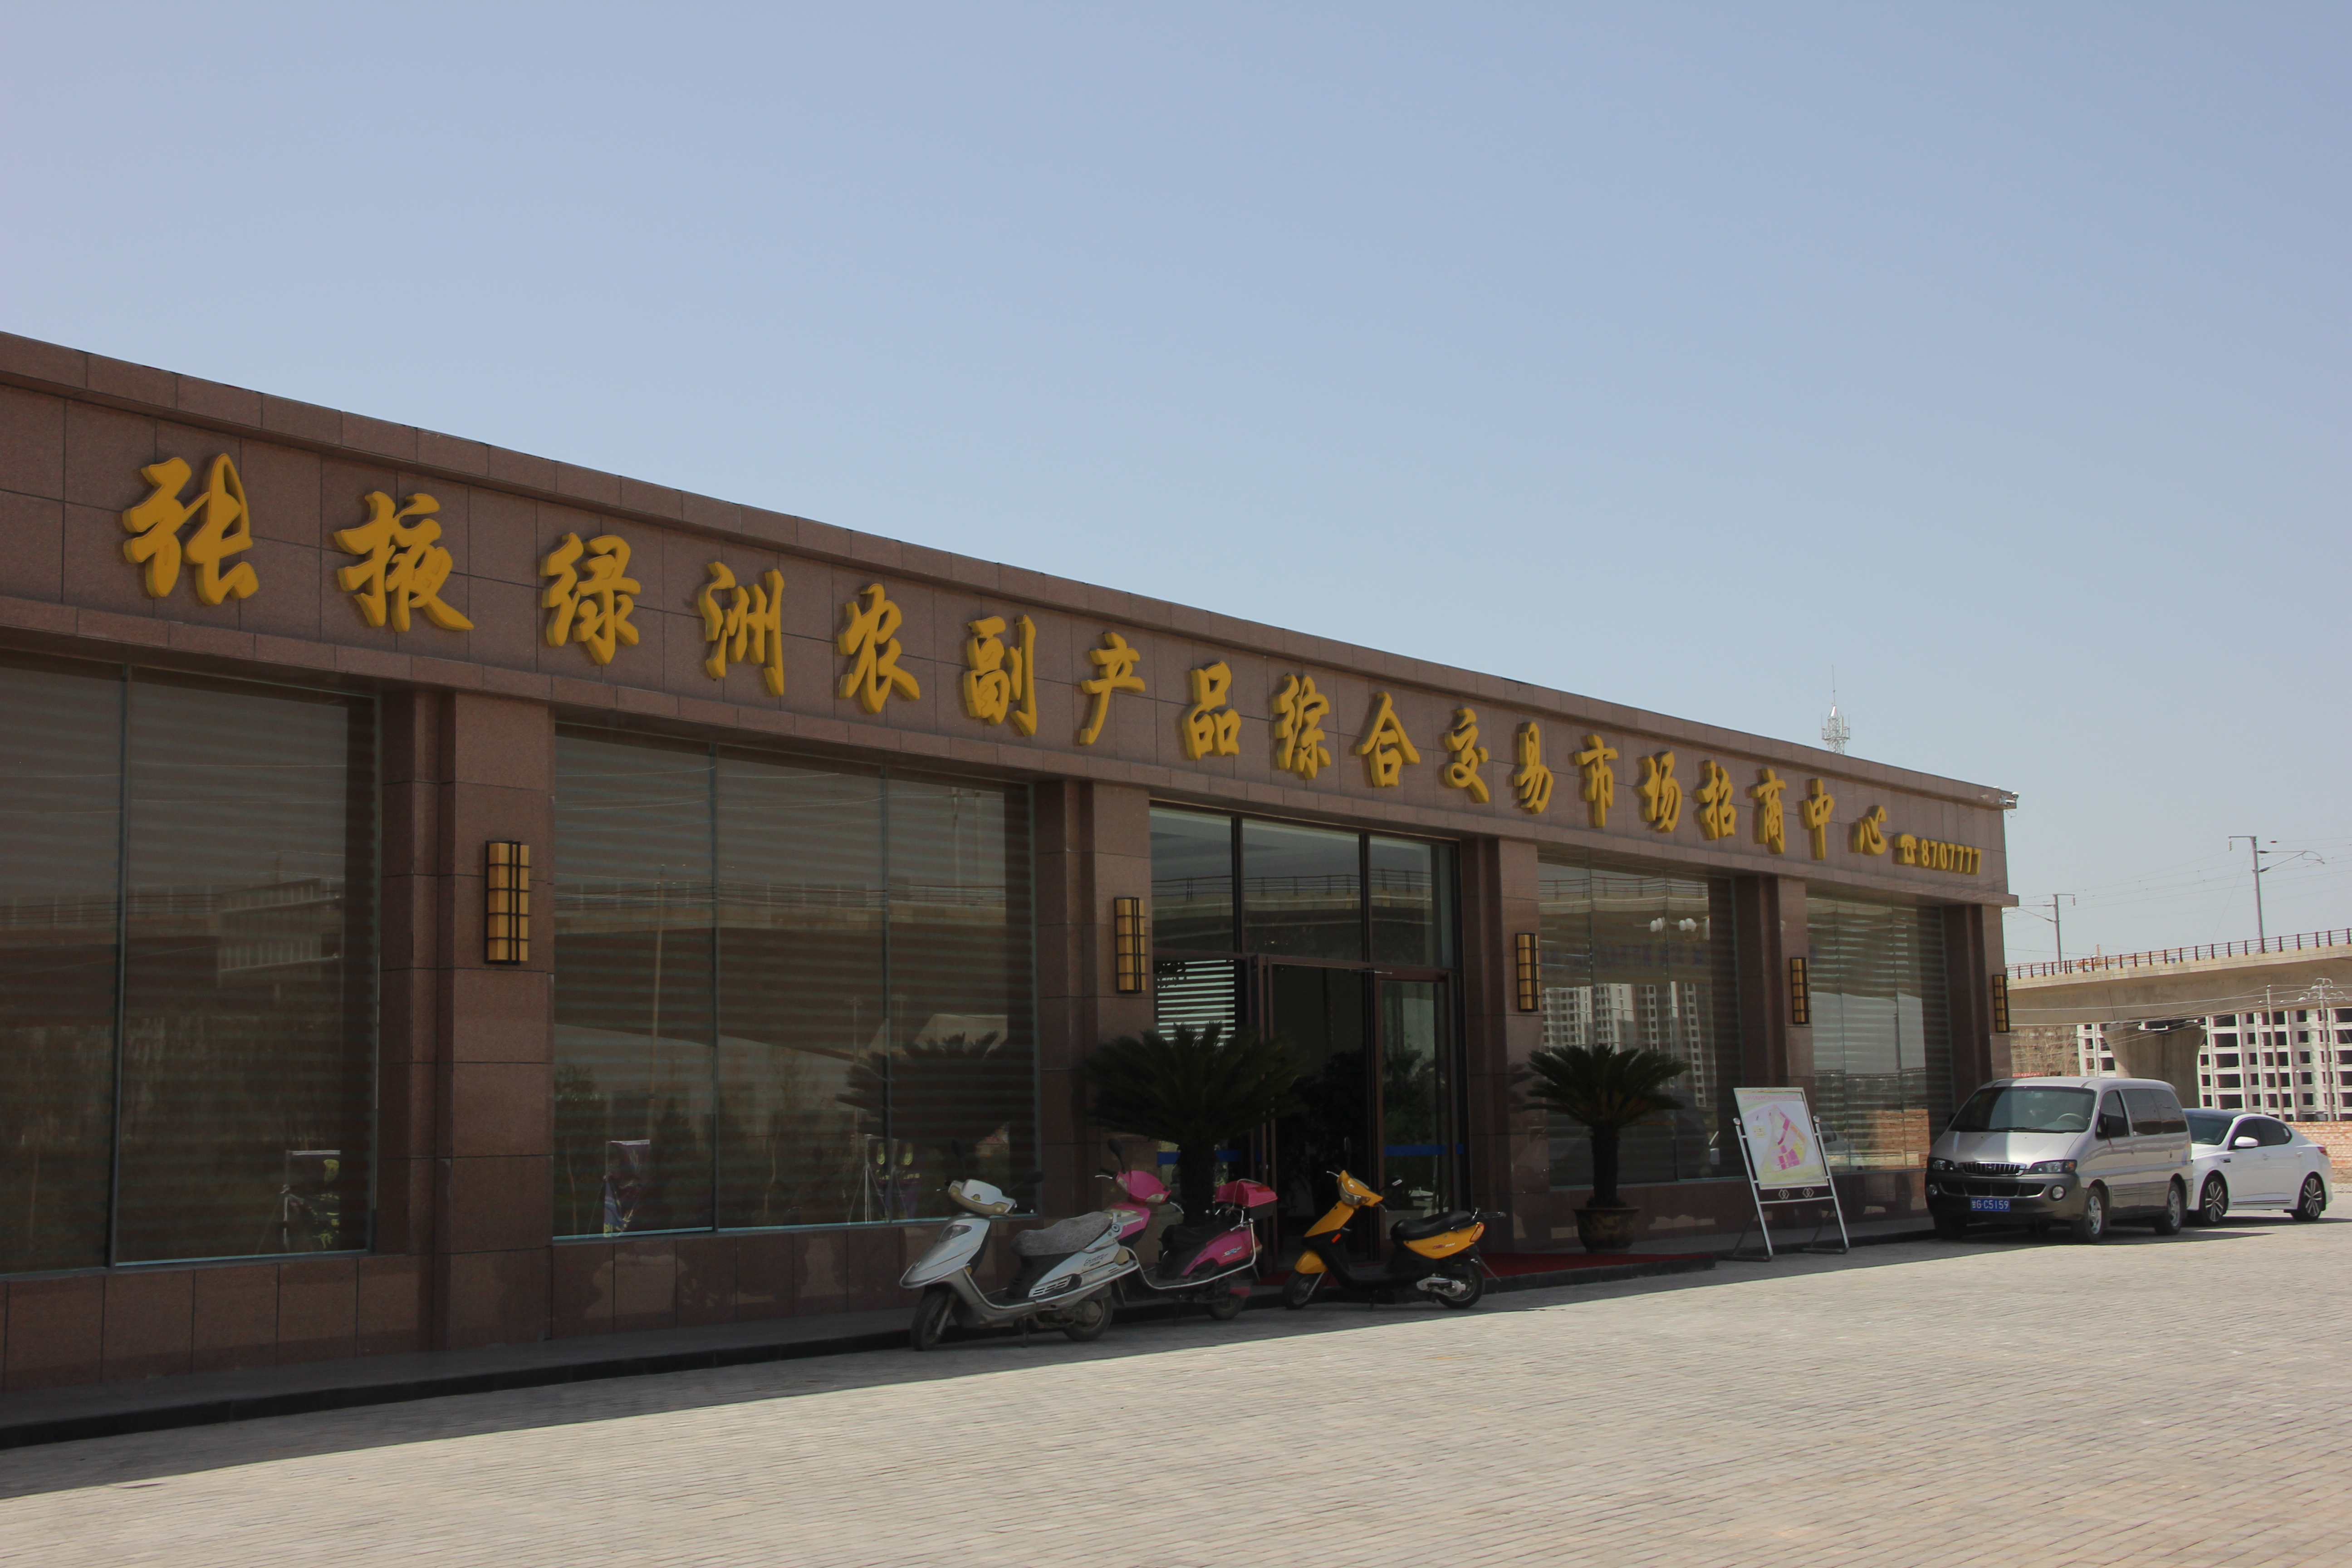 甘肃张掖绿洲农副产品综合交易市场正在成为丝绸之路上现代化农副产品交易中心